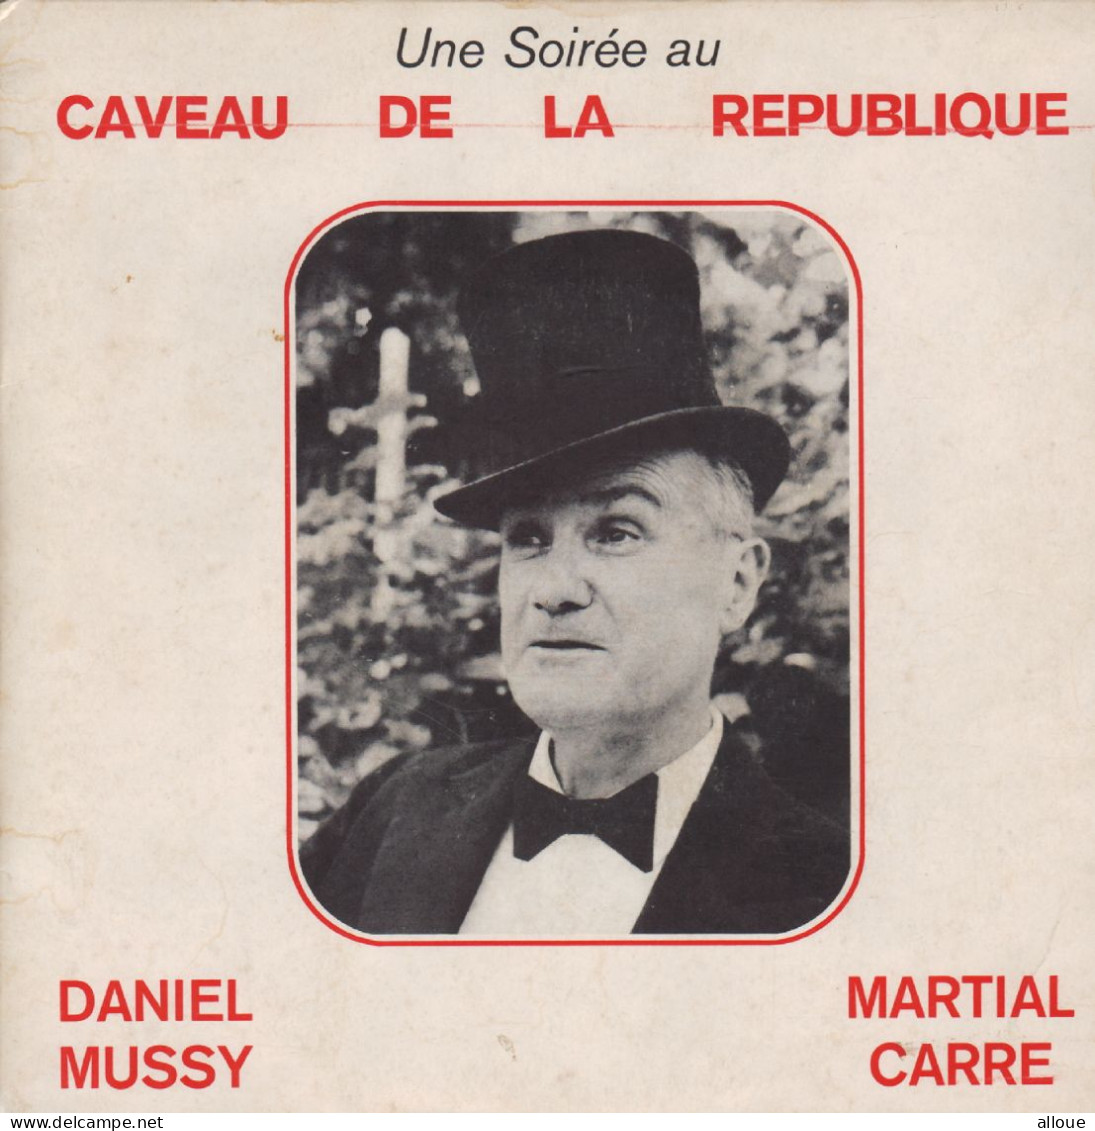 DANIEL MUSSY ET MARTIAL CARRE - FR EP - UNE SOIREE AU CAVEAU DE LA REPUBLIQUE / SONDAGE ET POLLUTION + TATA 73 - Humor, Cabaret